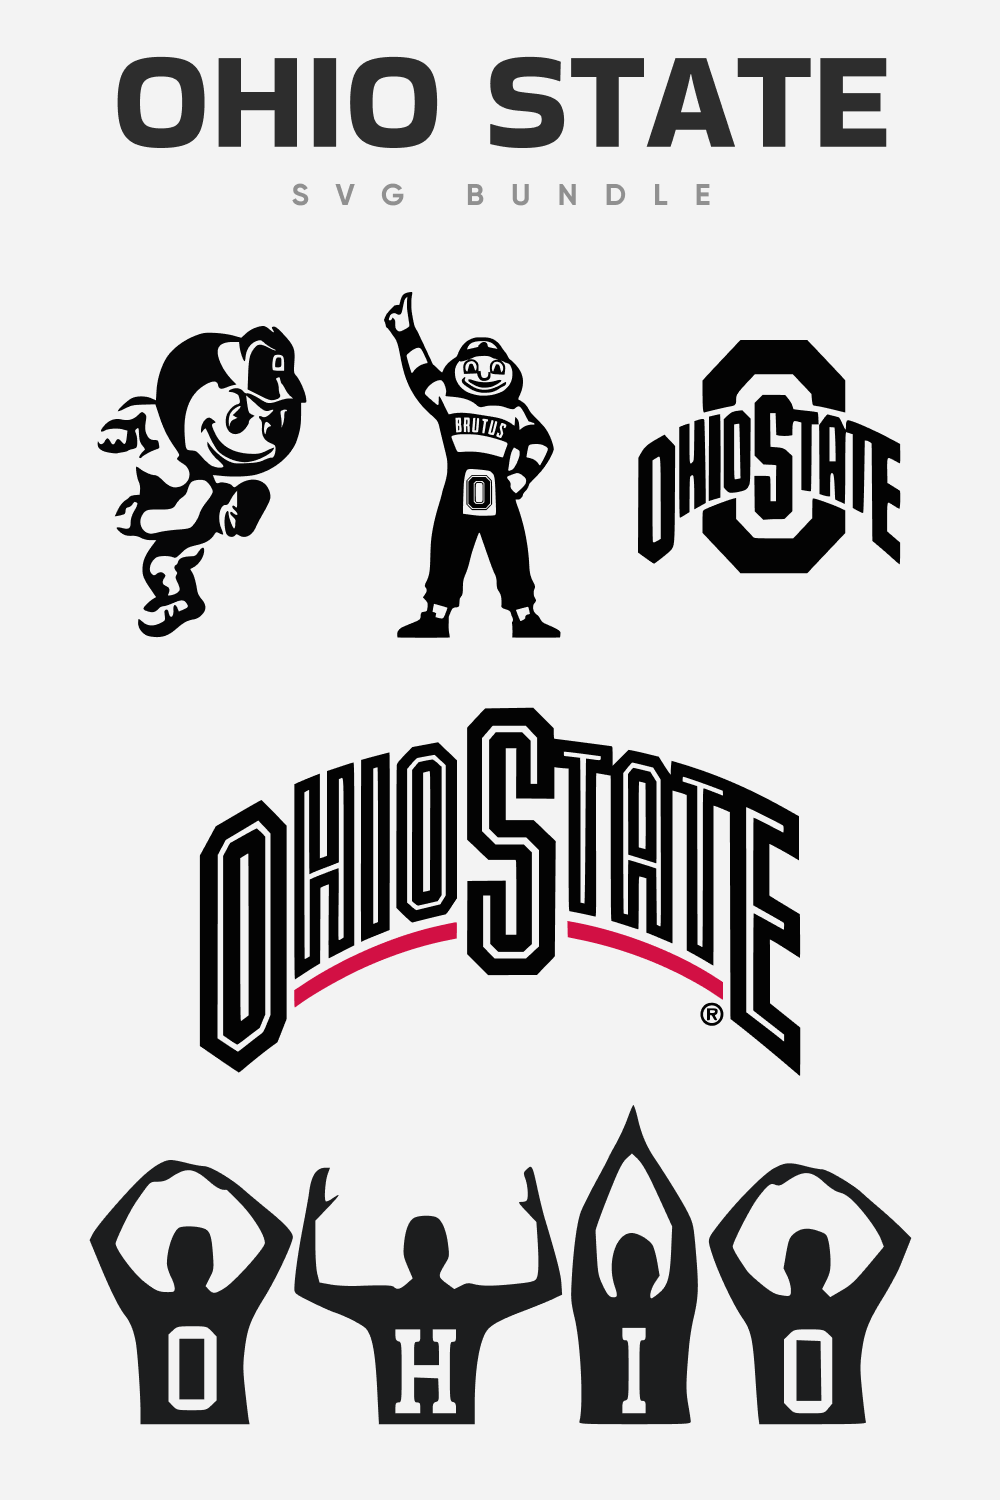 Ohio state SVG bundle.